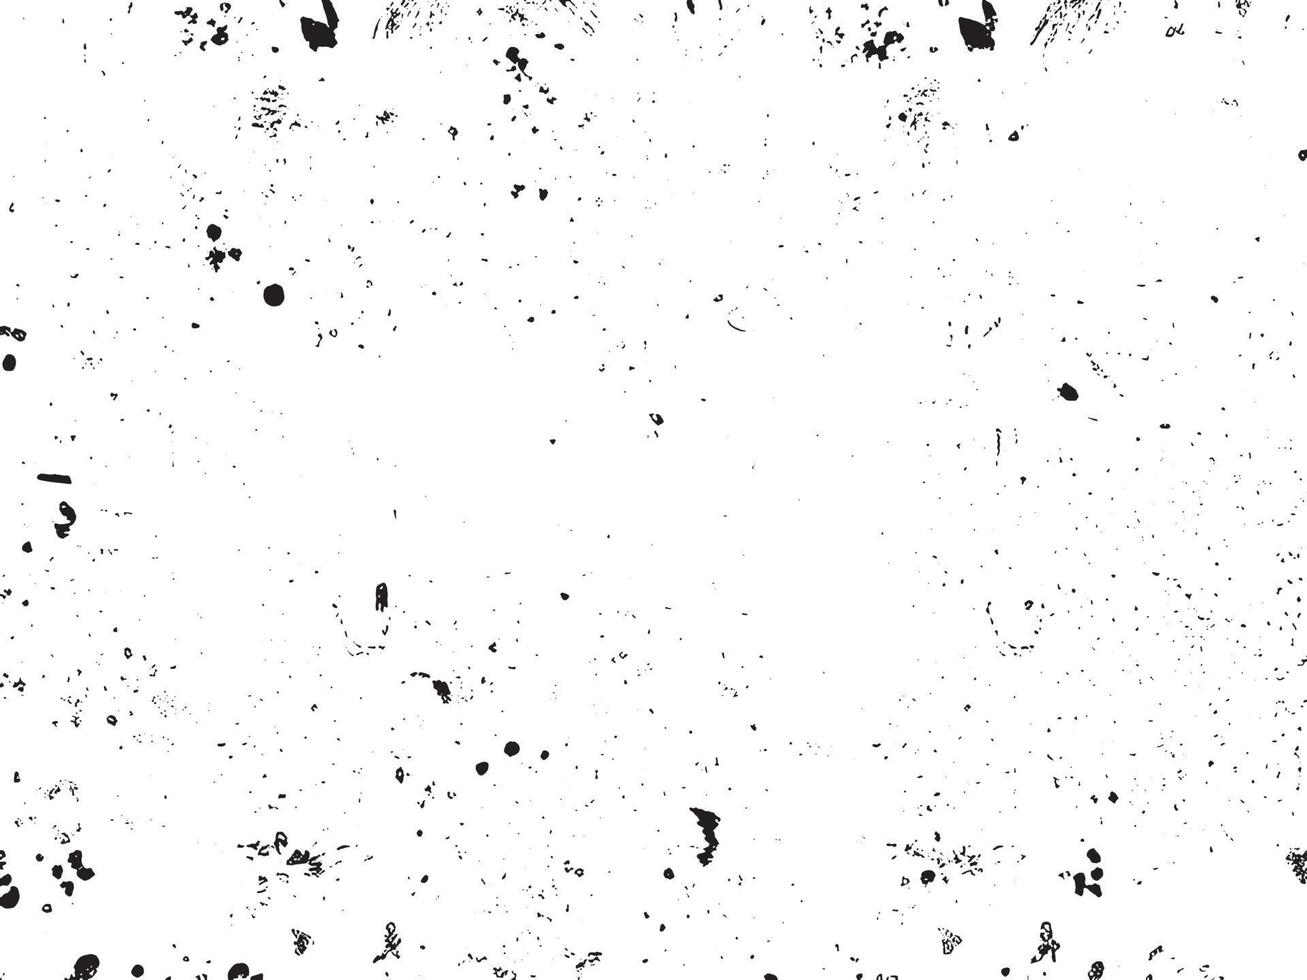 grunge bakgrund vektor illustration. svart och vit rörig textur med repor och prickar. bedrövad täcka över effekt för retro design. abstrakt smutsig yta med tömma Plats. eps10.